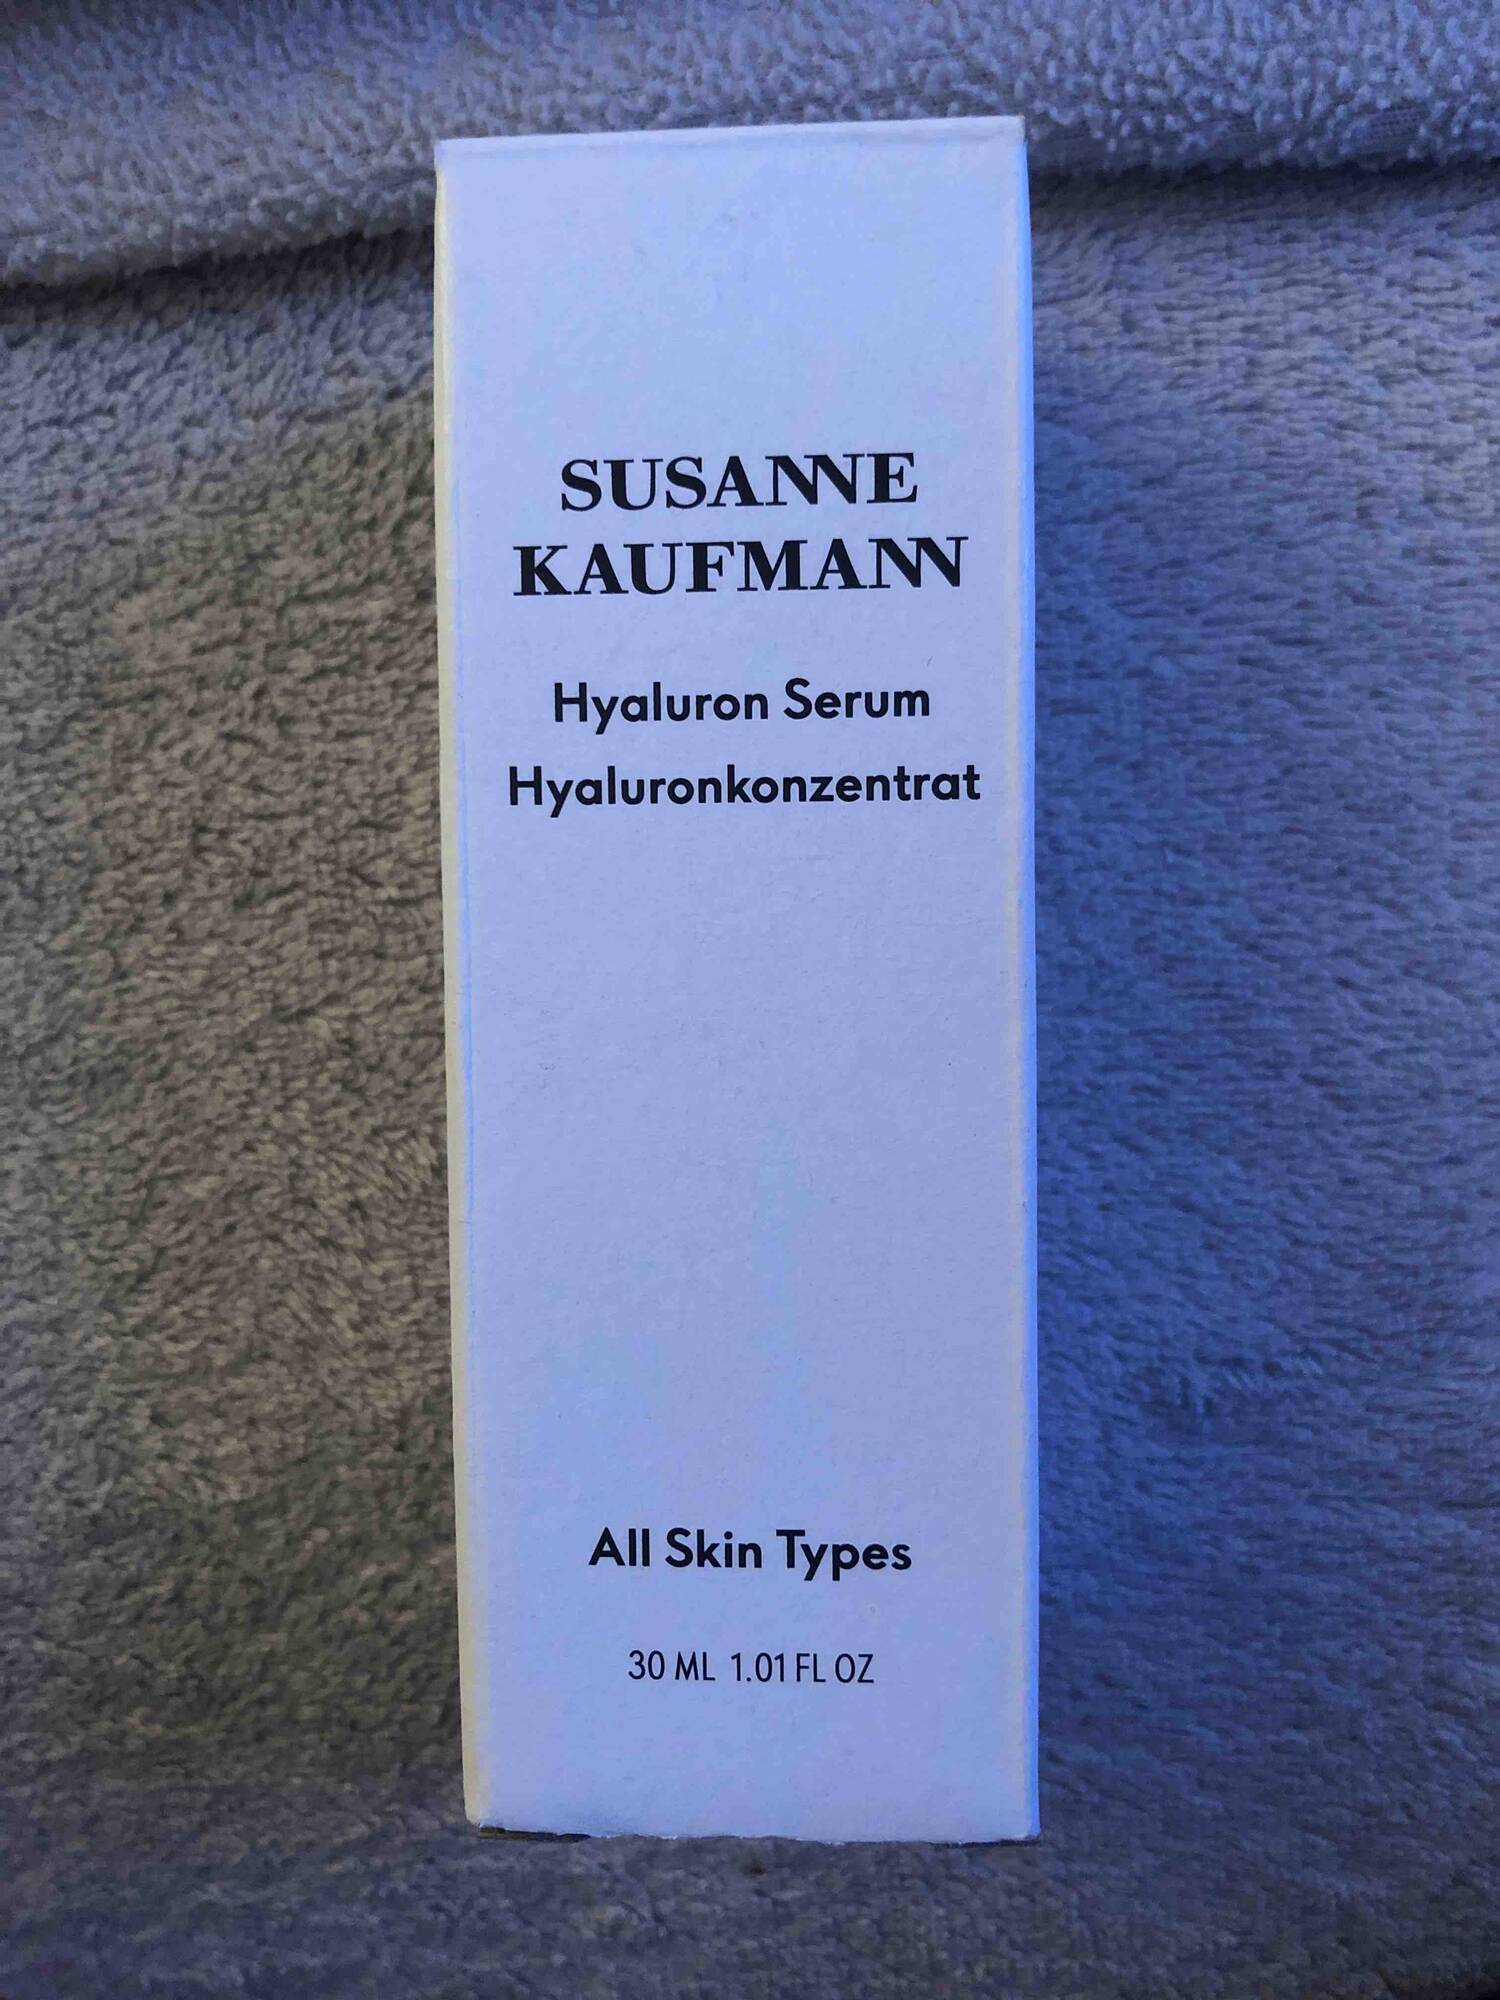 SUSANNE KAUFMANN - Hyaluron serum